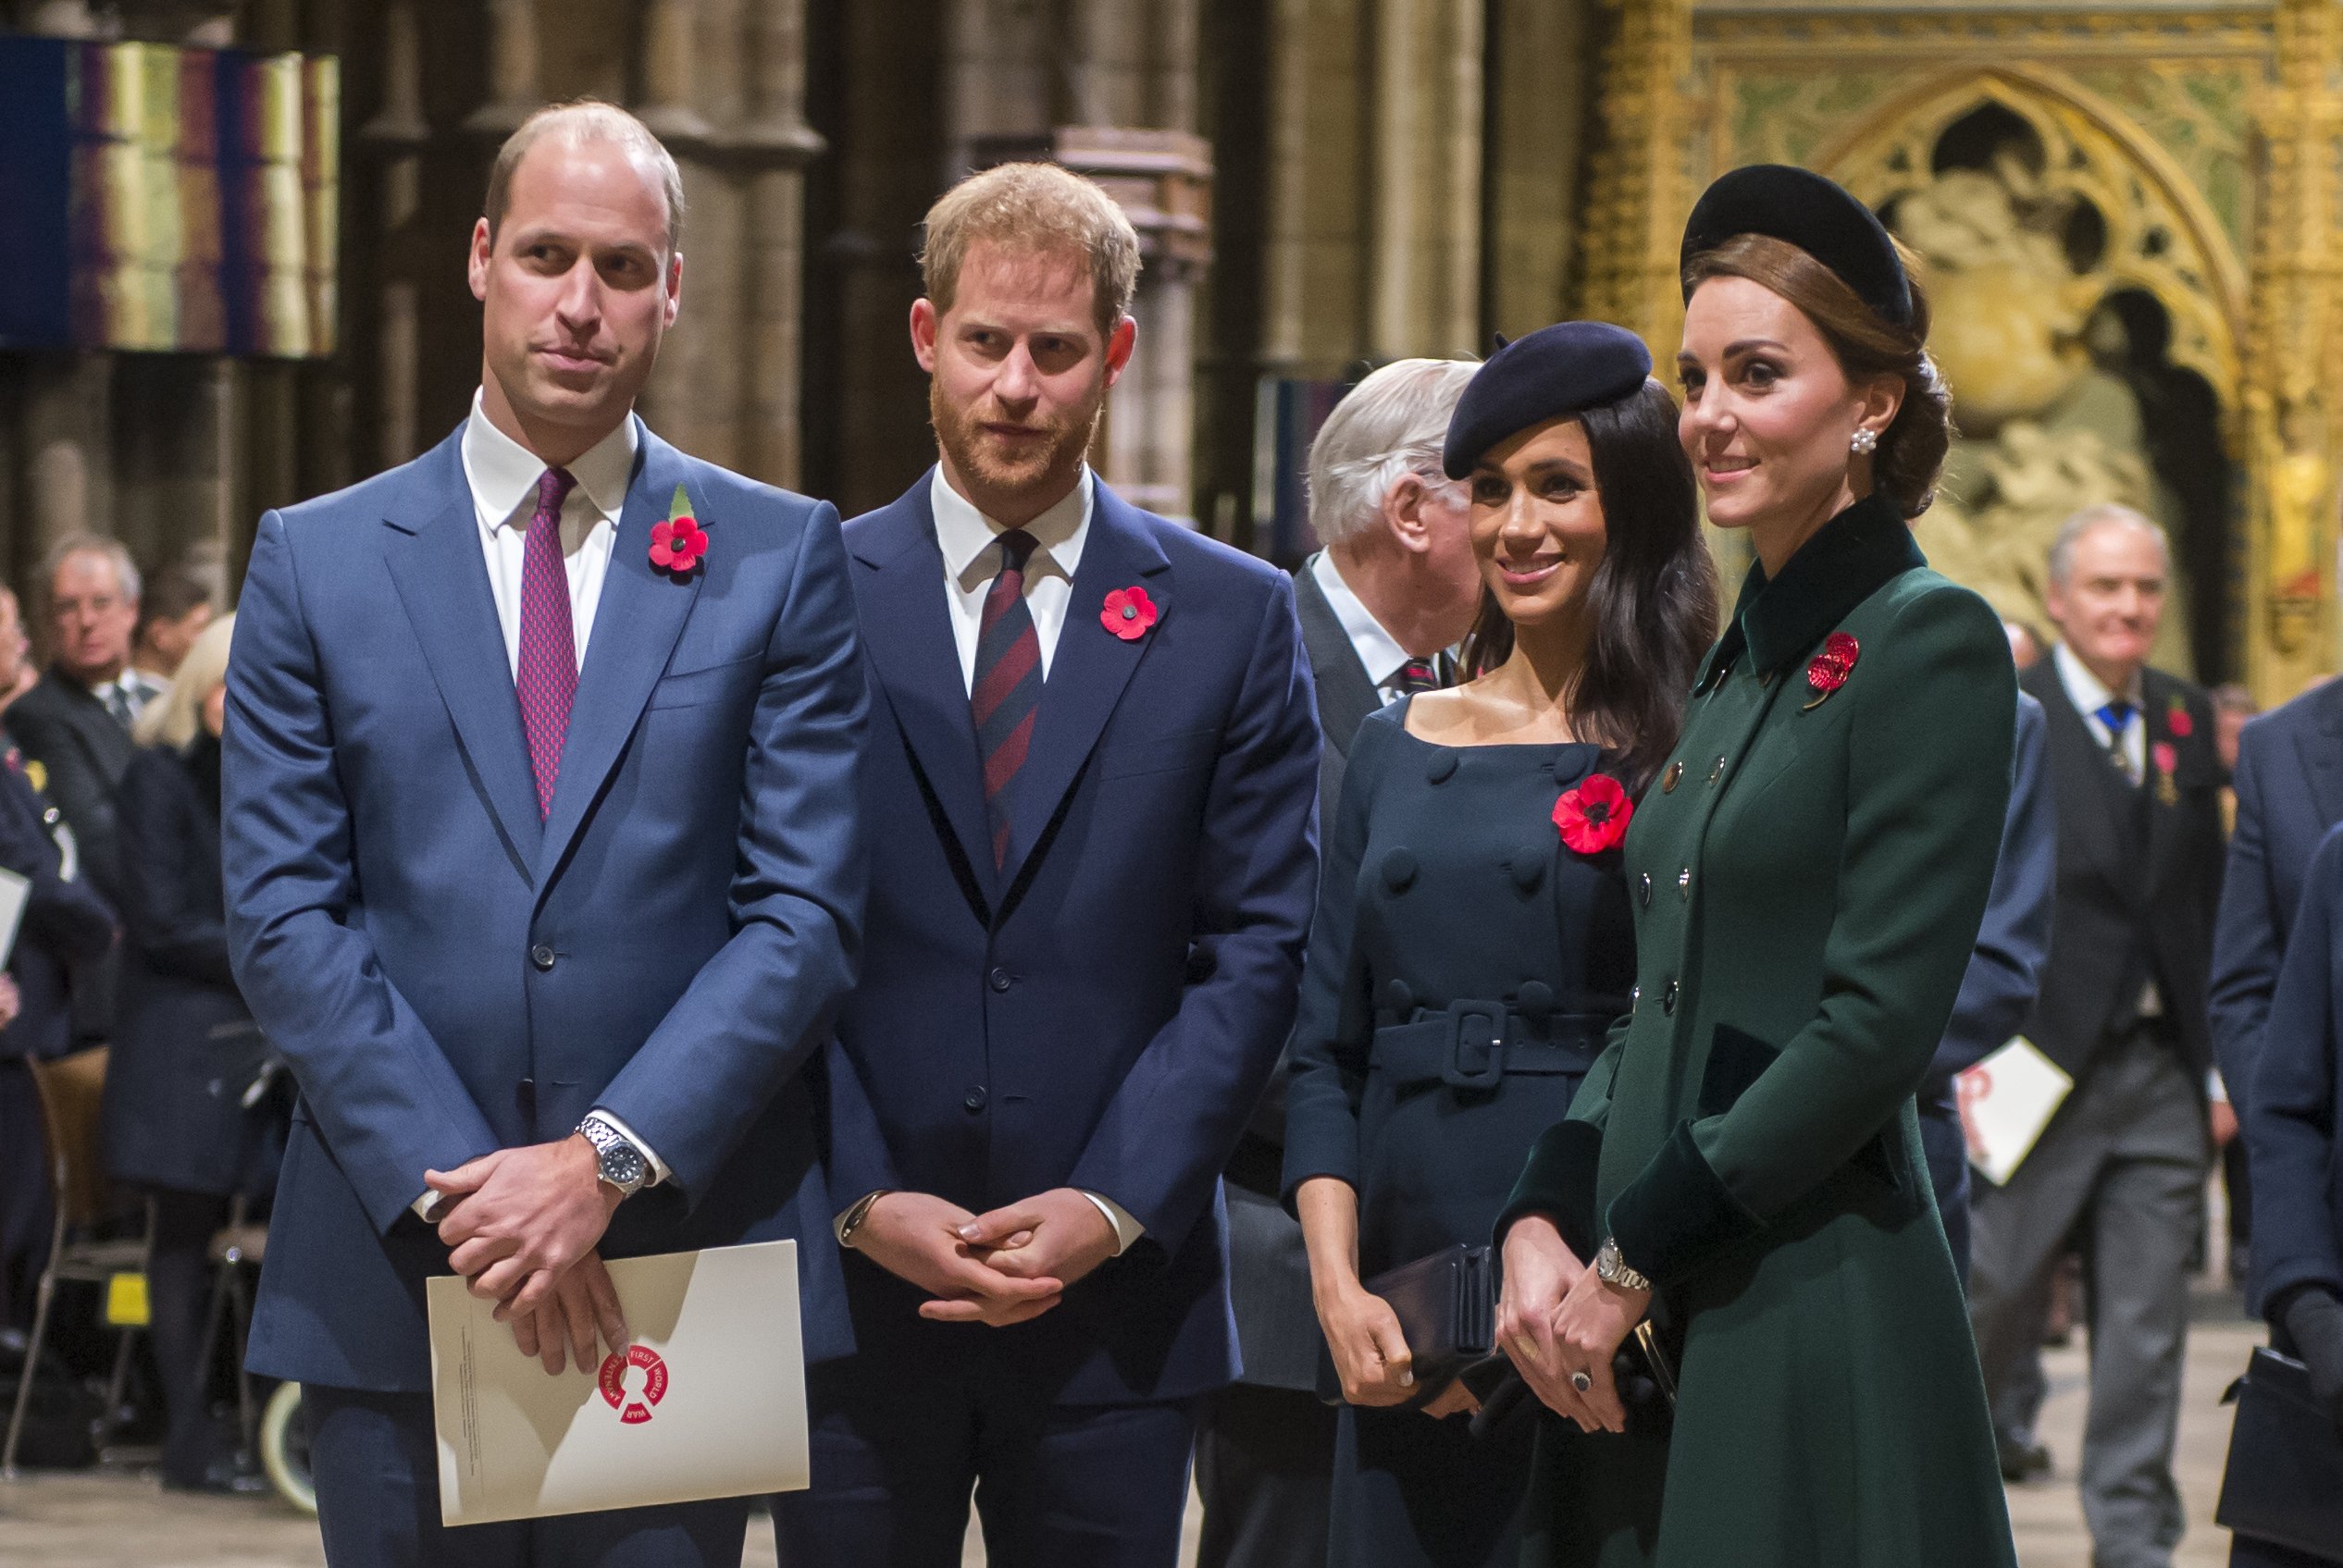 Le prince William, le prince Harry, Meghan Markle et Kate Middleton arrivent à l'abbaye de Westminster pour assister à un service marquant le centenaire de l'Armistice, le 11 novembre 2018 à Londres. | Source : Getty Images